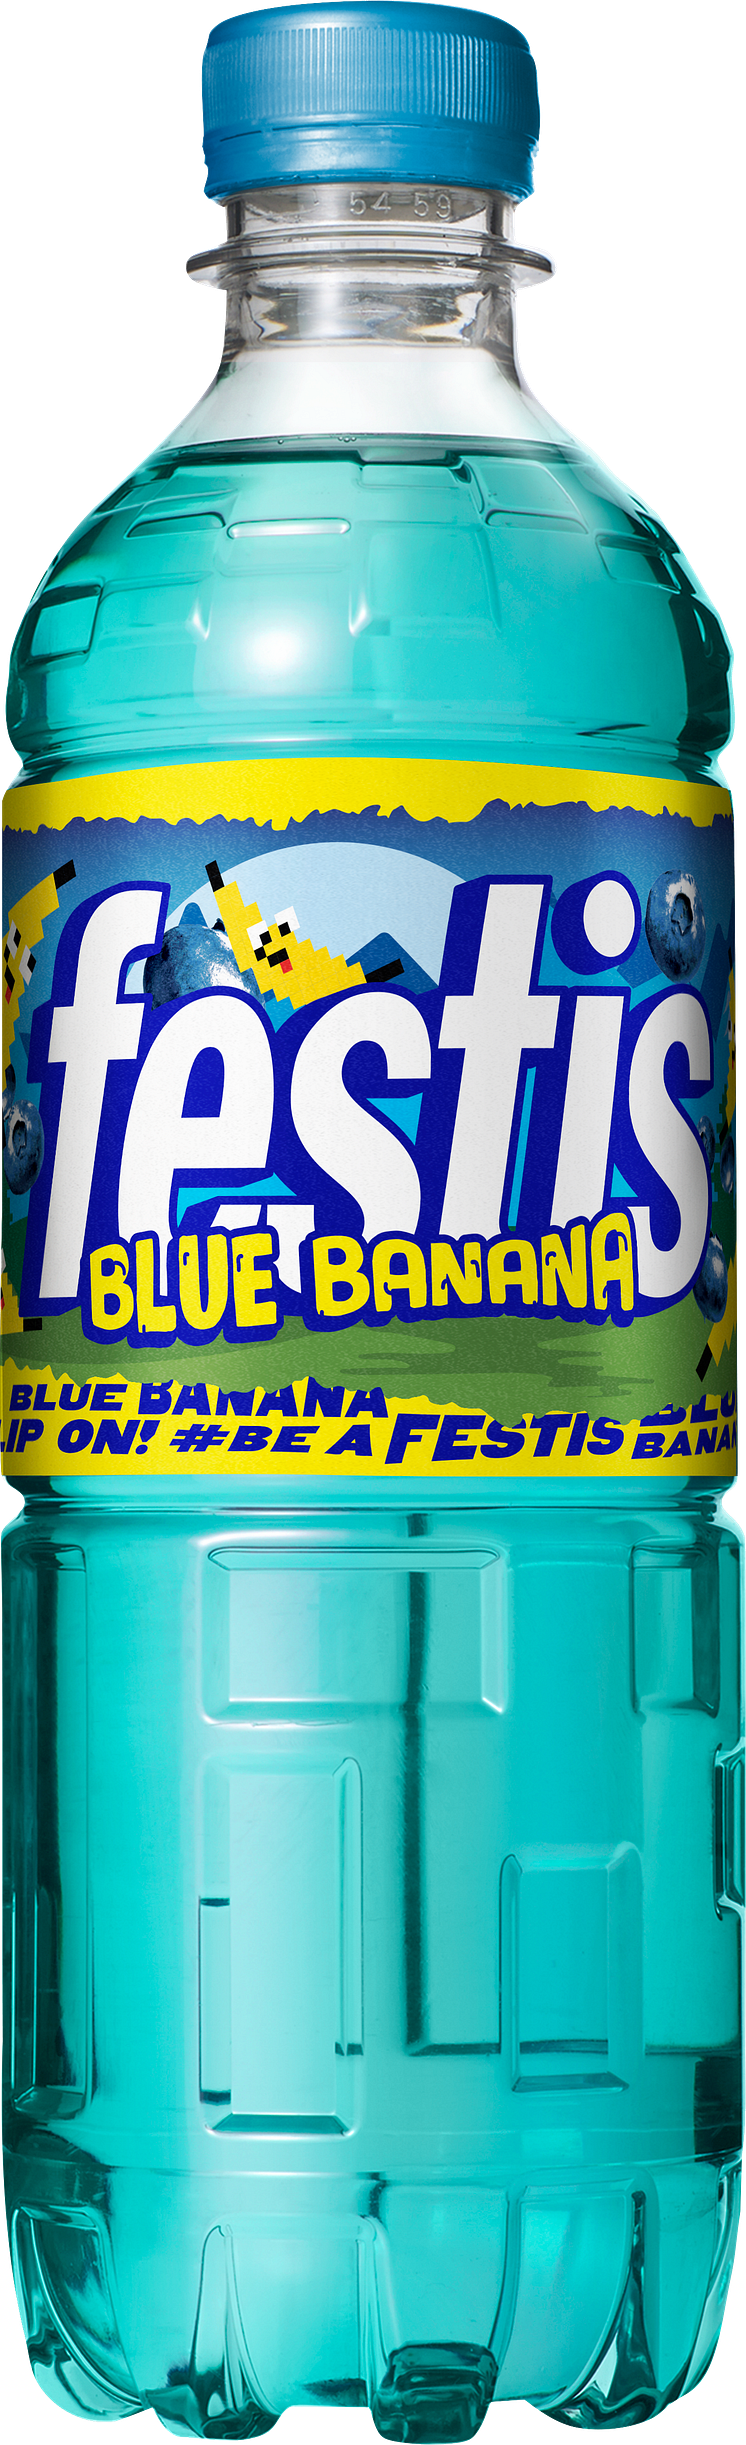 Festis Blue Banana 